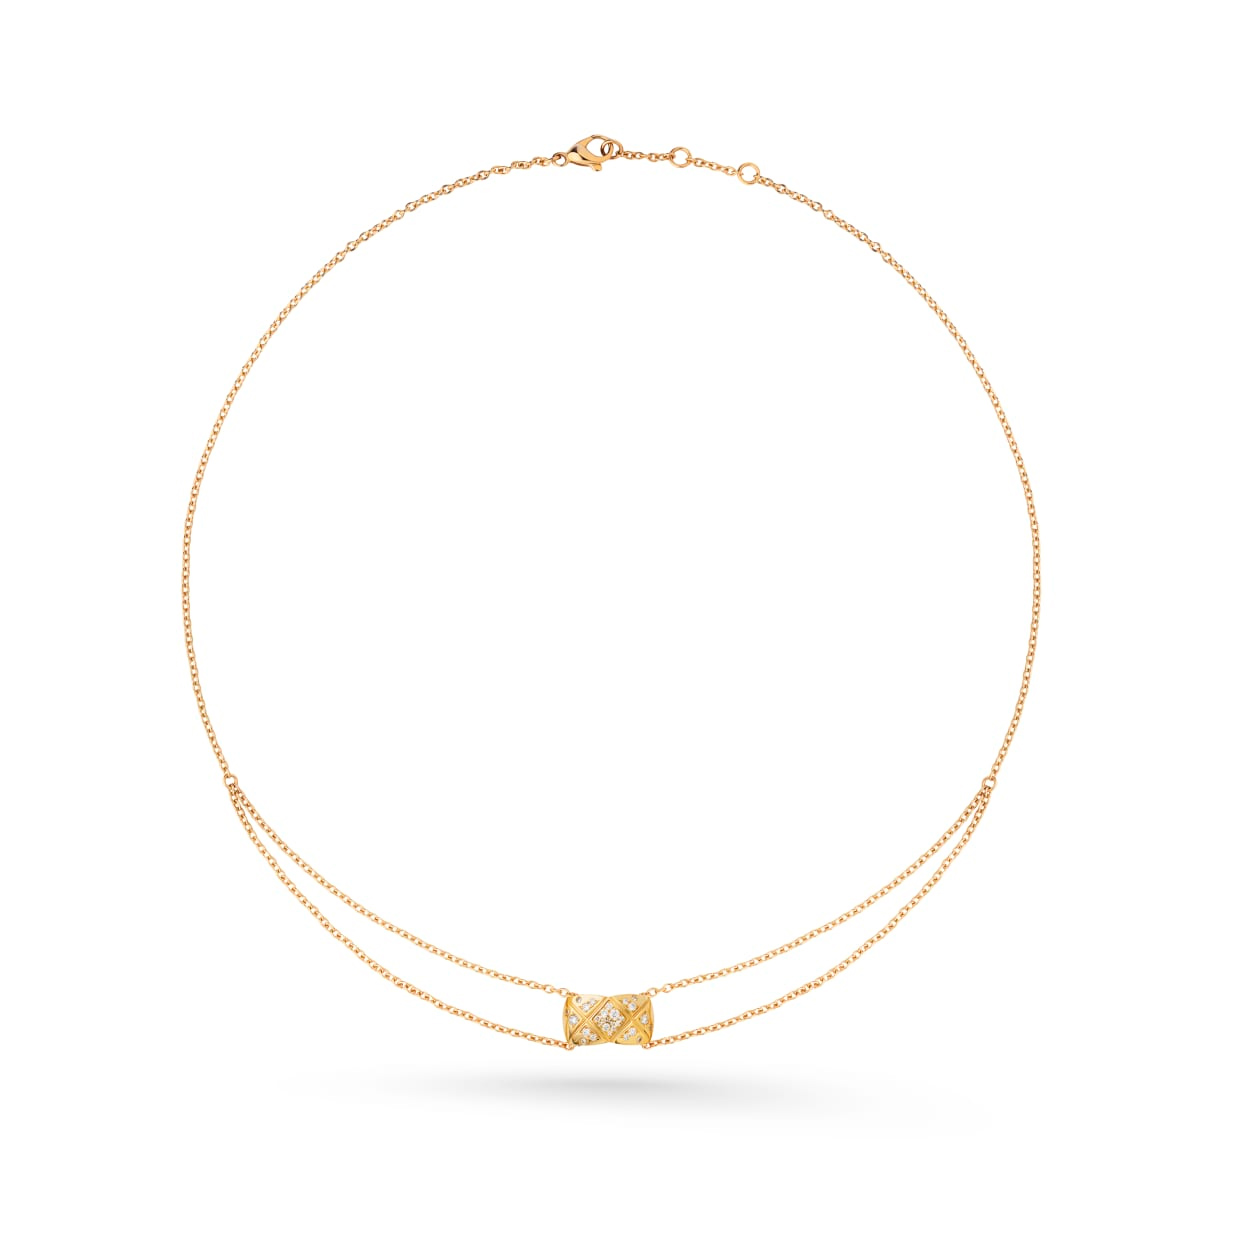 Grosir gelang OEM ODM dalam 18K OEM/ODM Perhiasan emas kuning, berlian desain khusus produsen perhiasan Anda